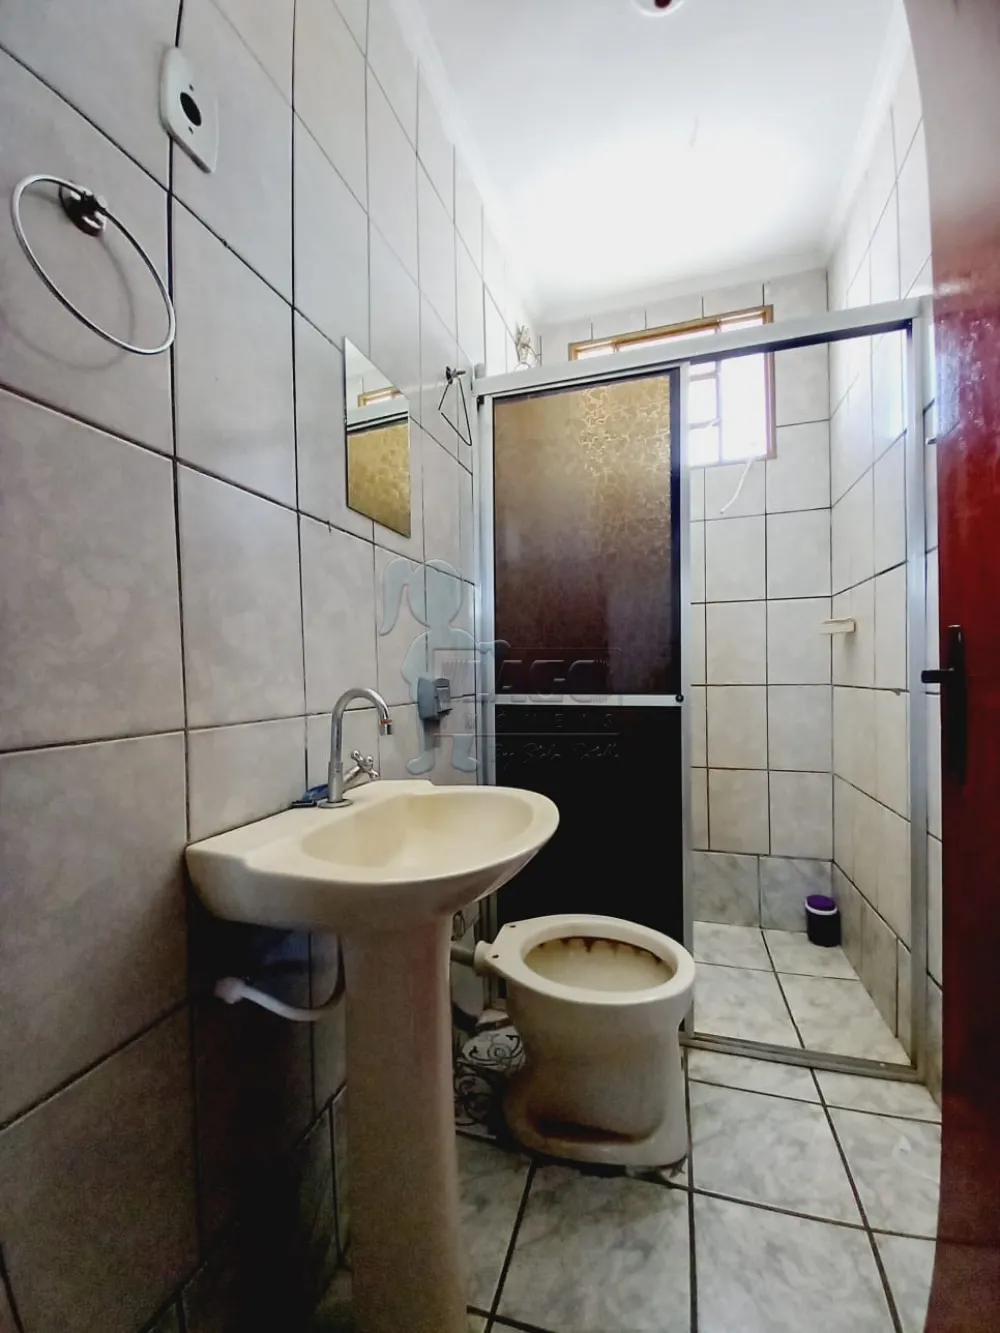 Alugar Casas / Padrão em Ribeirão Preto R$ 1.100,00 - Foto 6